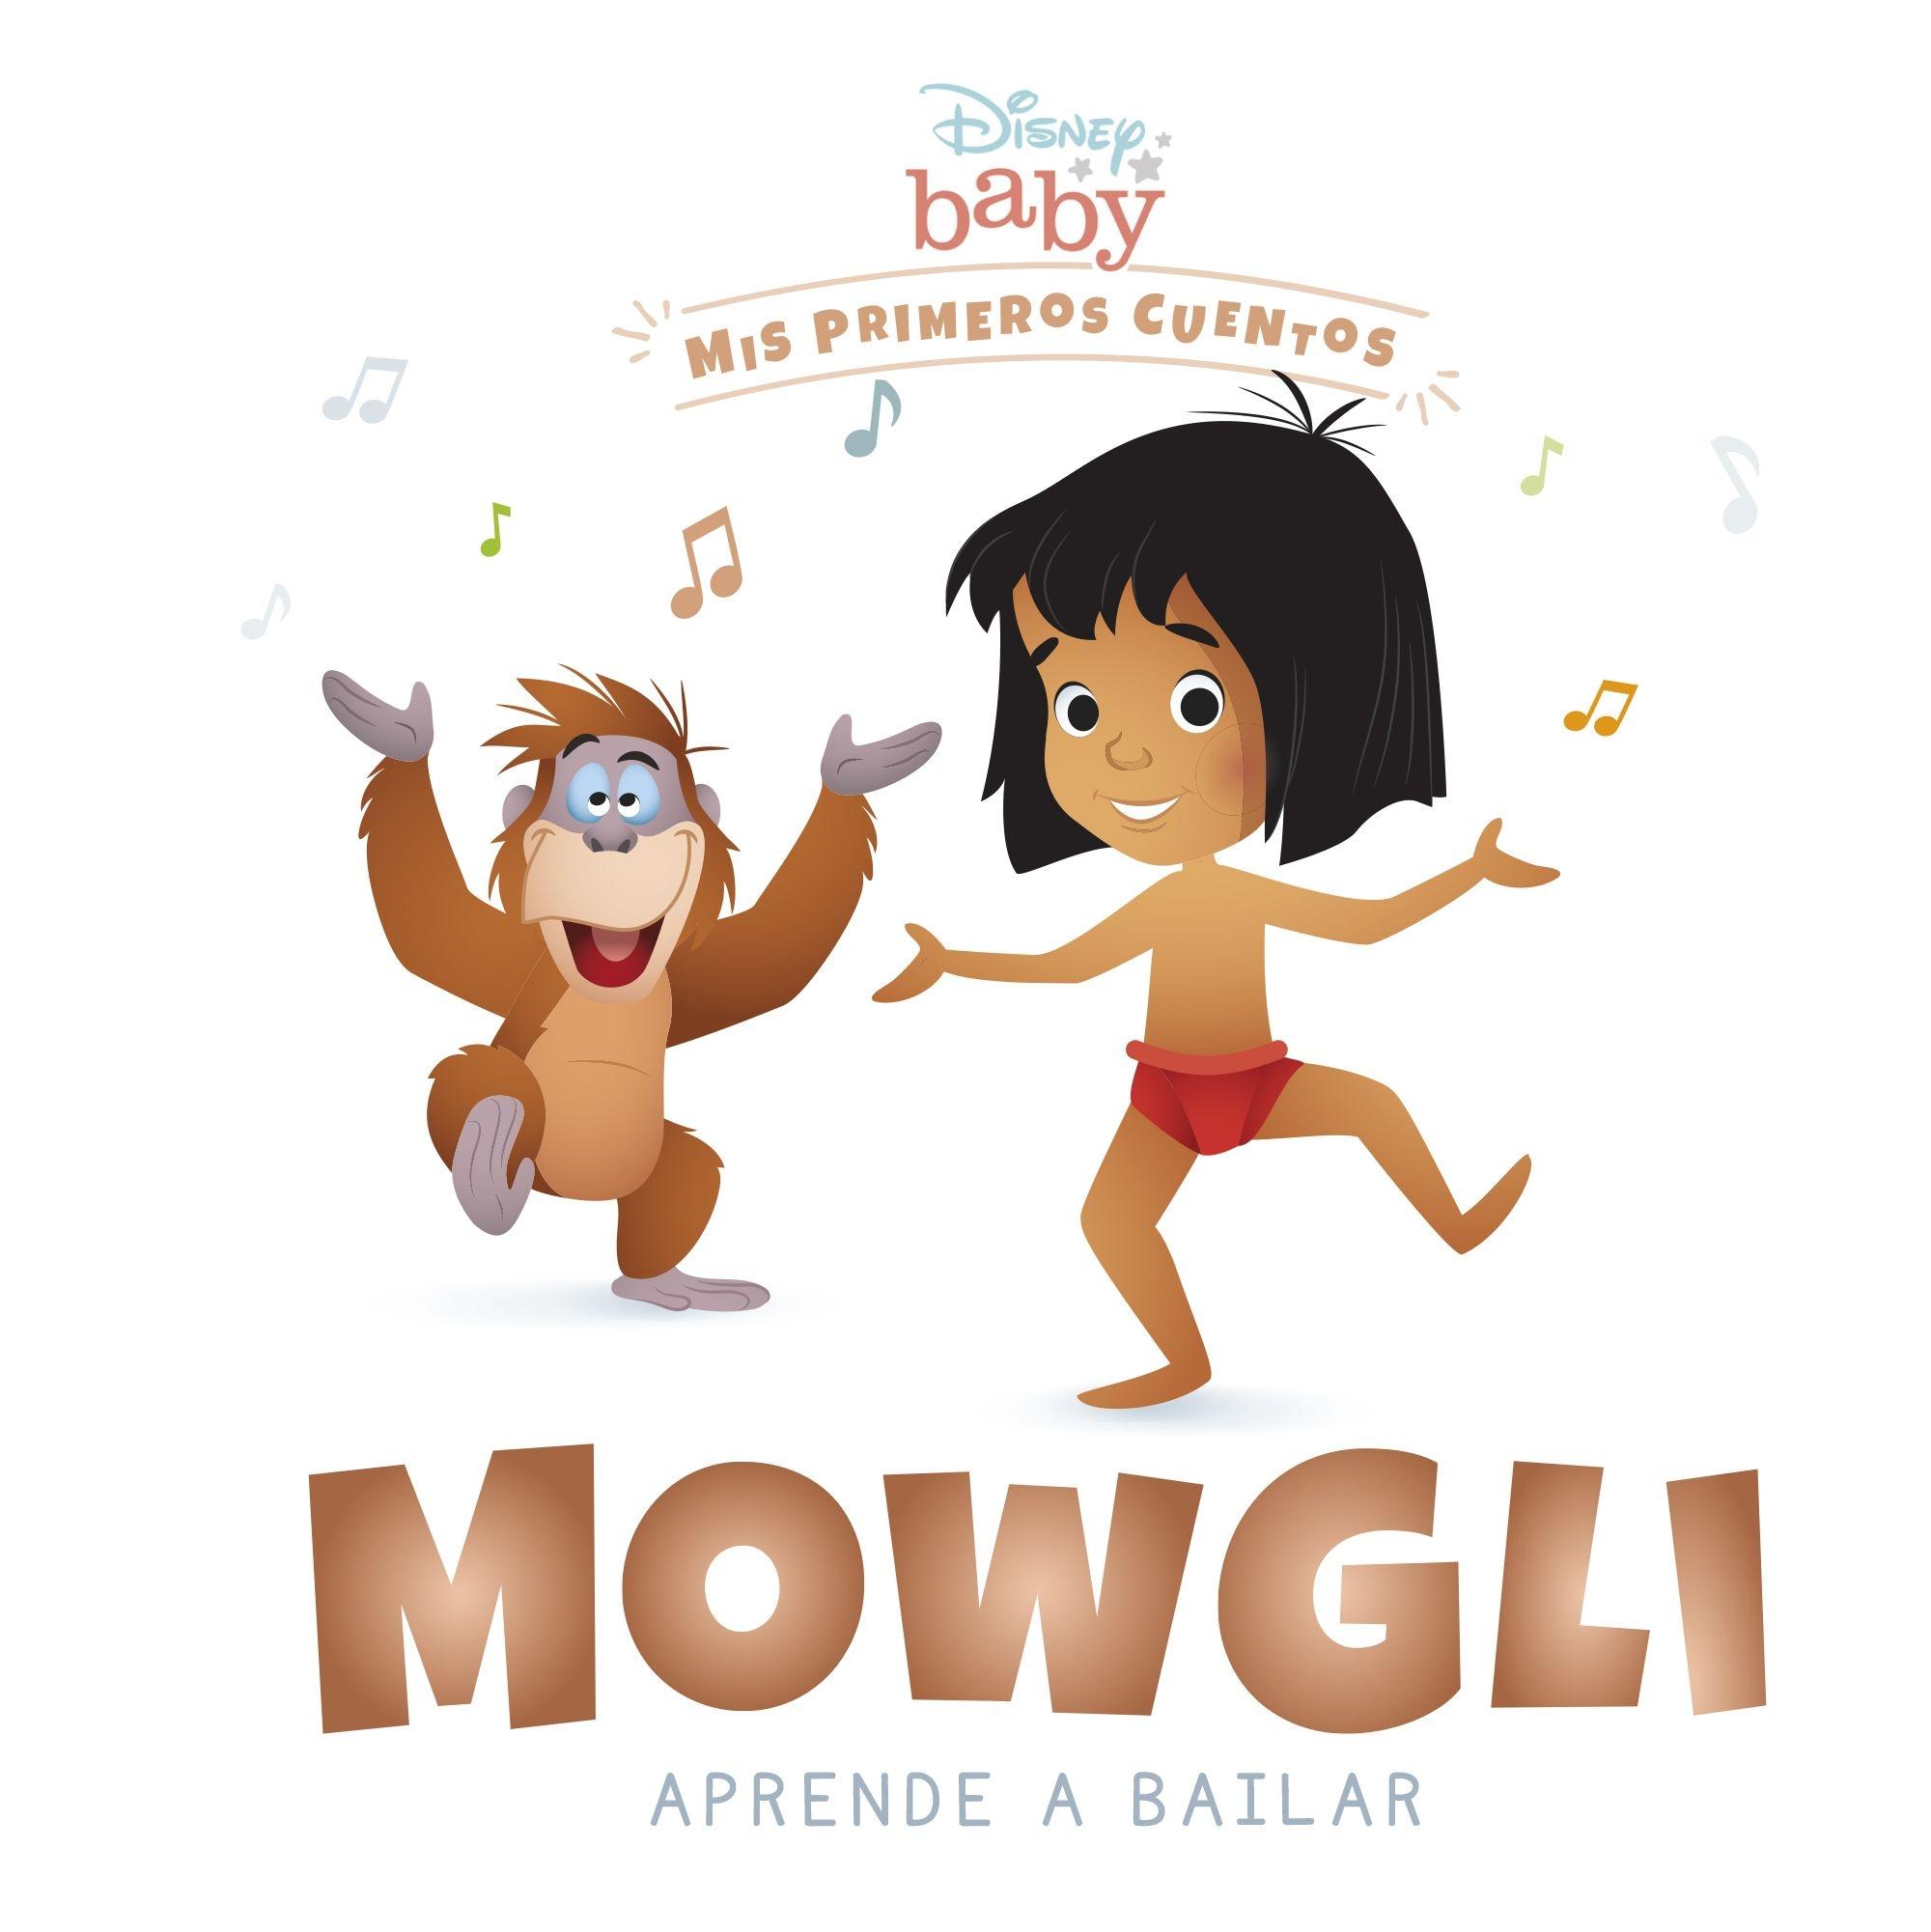 Disney Baby. Mowgli aprende a bailar "Mis primeros cuentos"